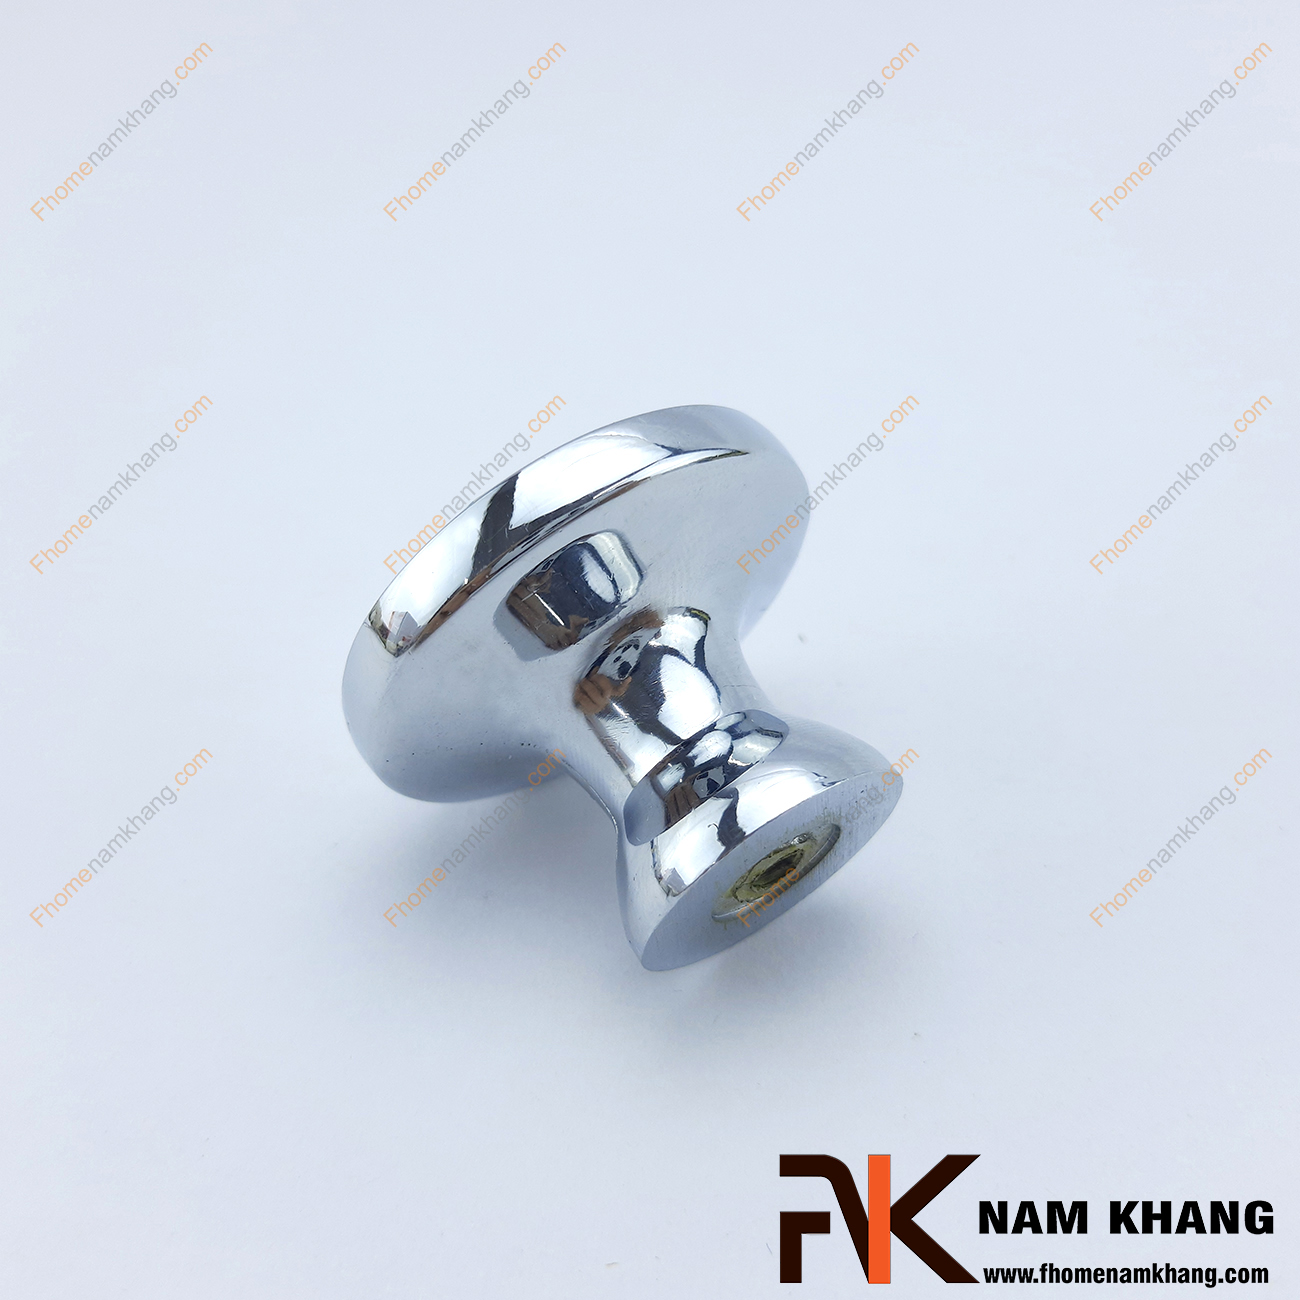 Núm nắm tủ dạng pha lê NK295-B có thiết kế như một viên pha lê được bao quanh bởi hợp kim mạ trắng bạc tuyệt đẹp